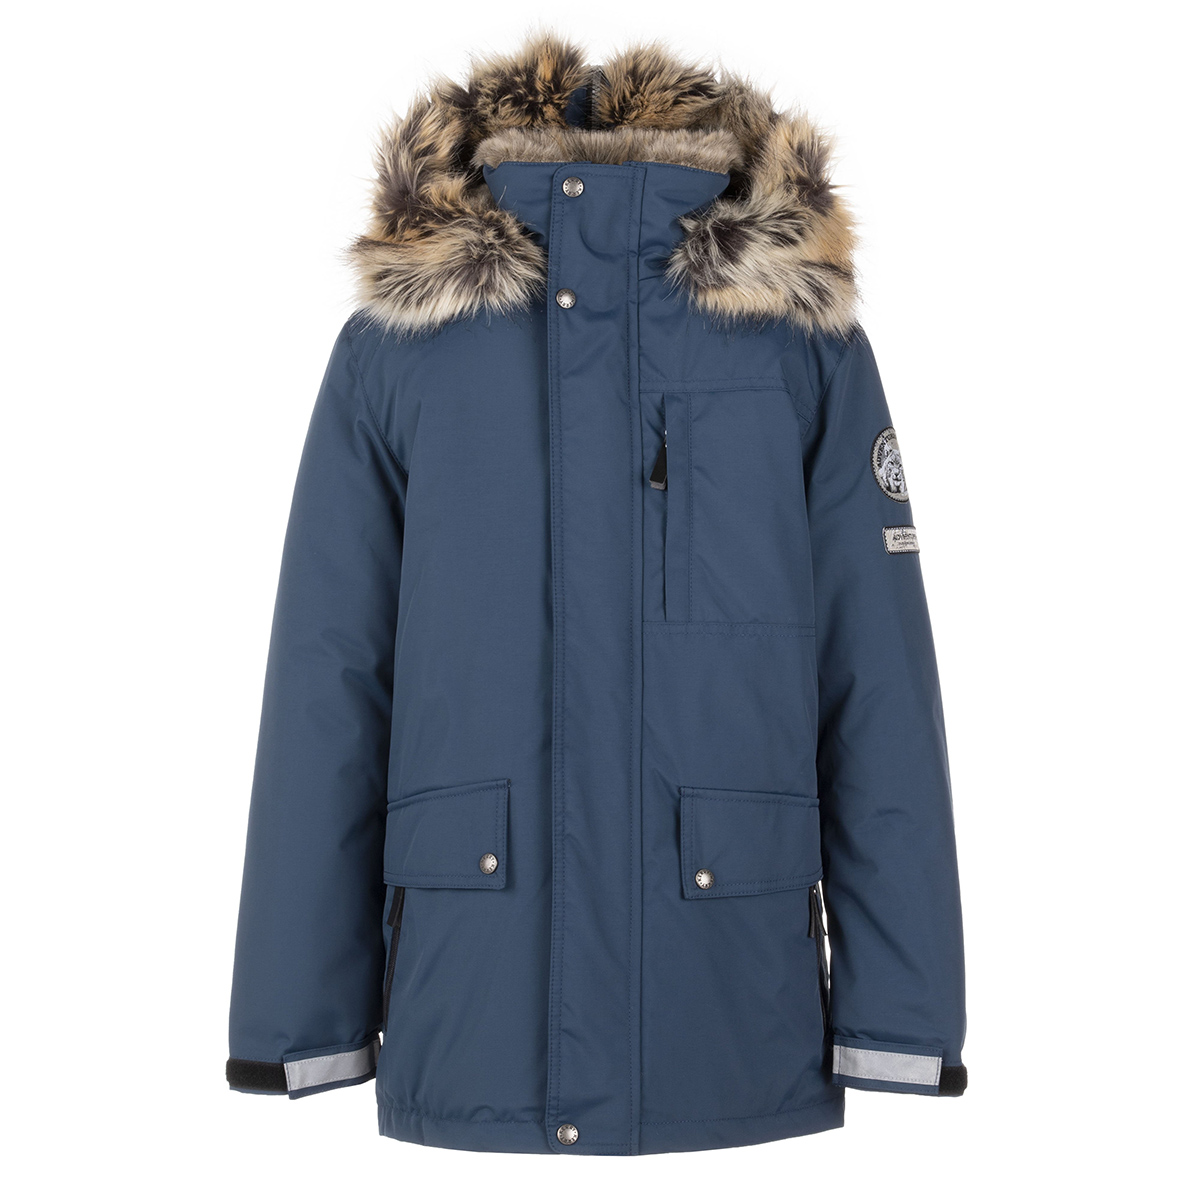 Купить Куртка детская KERRY JAKOB р.158 цв. 669-синий морской K21468-669_158,